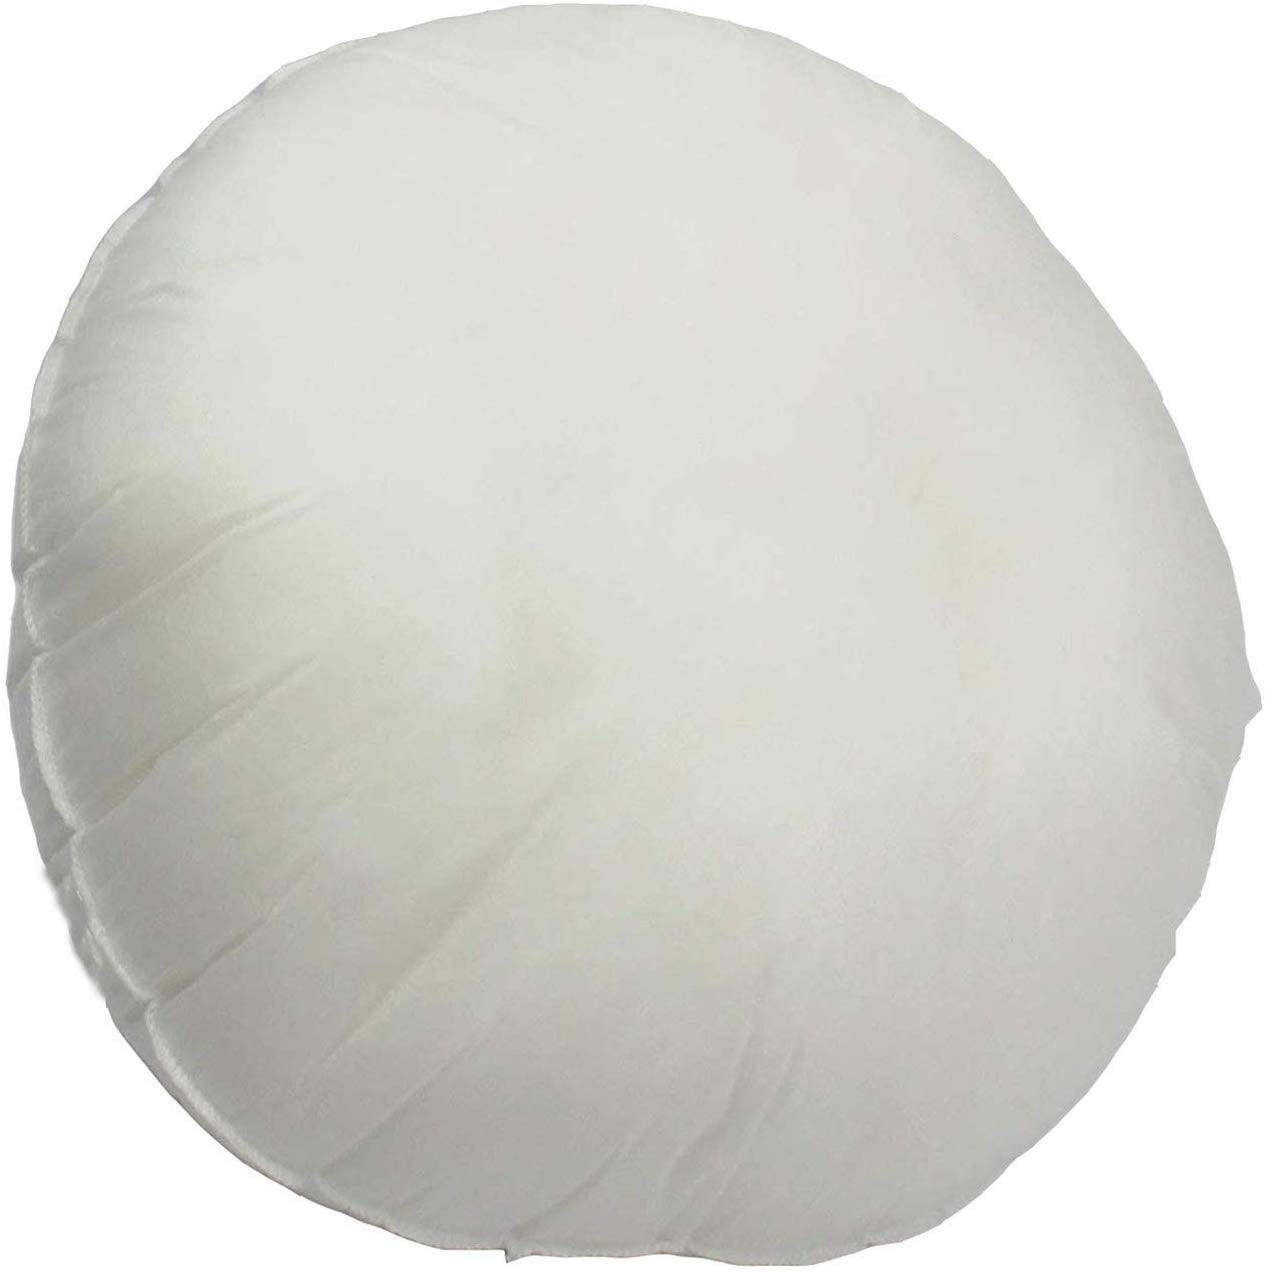 Mybecca Premium Stuffer Pillow Insert Sham Square Form Polyester, 14 L X  14 W, Standard/White